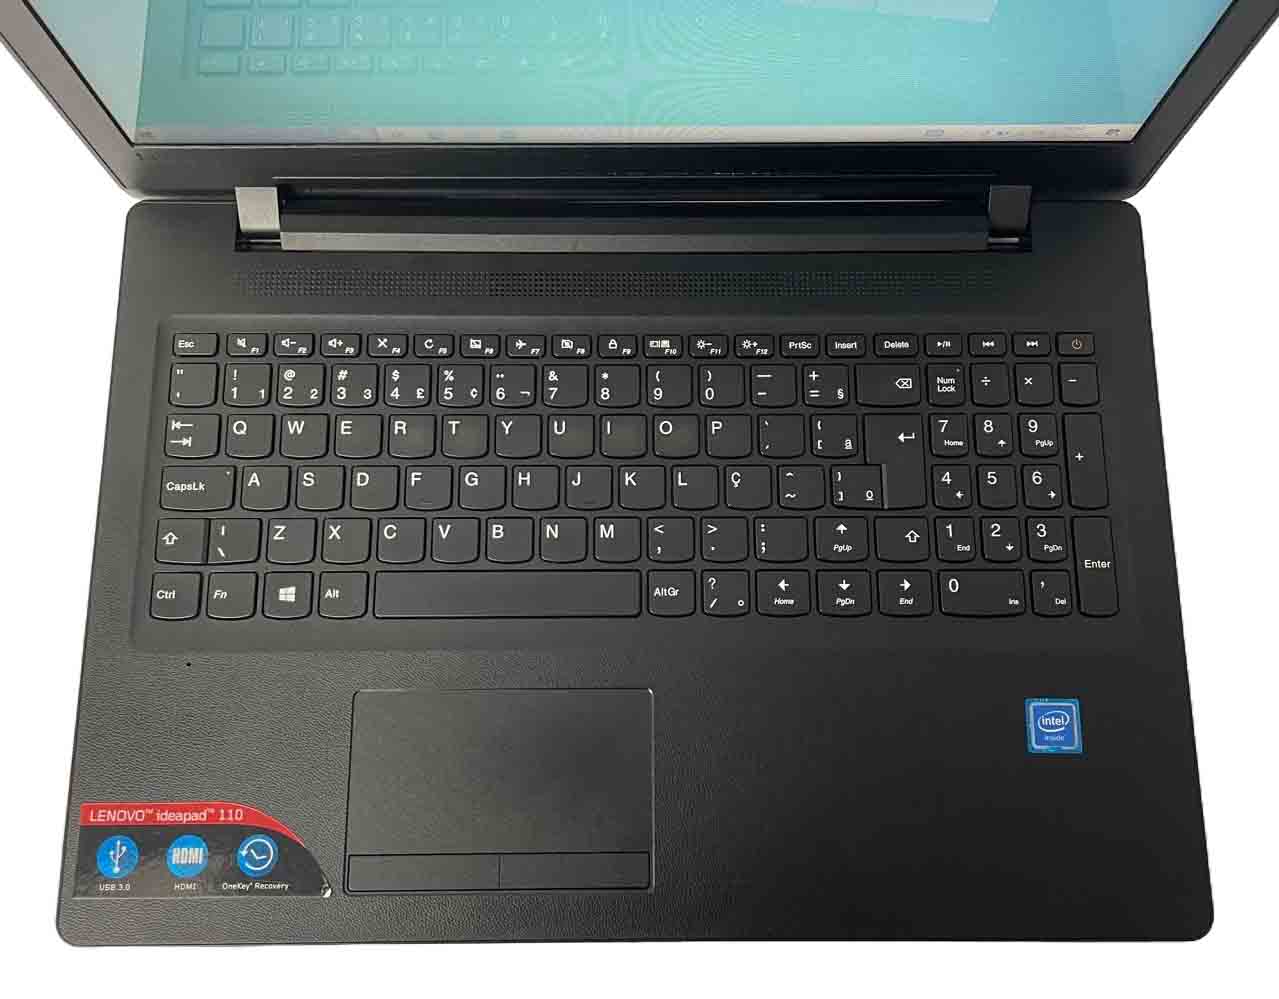 Notebook Lenovo, IdeaPad 110, Tela 15.6